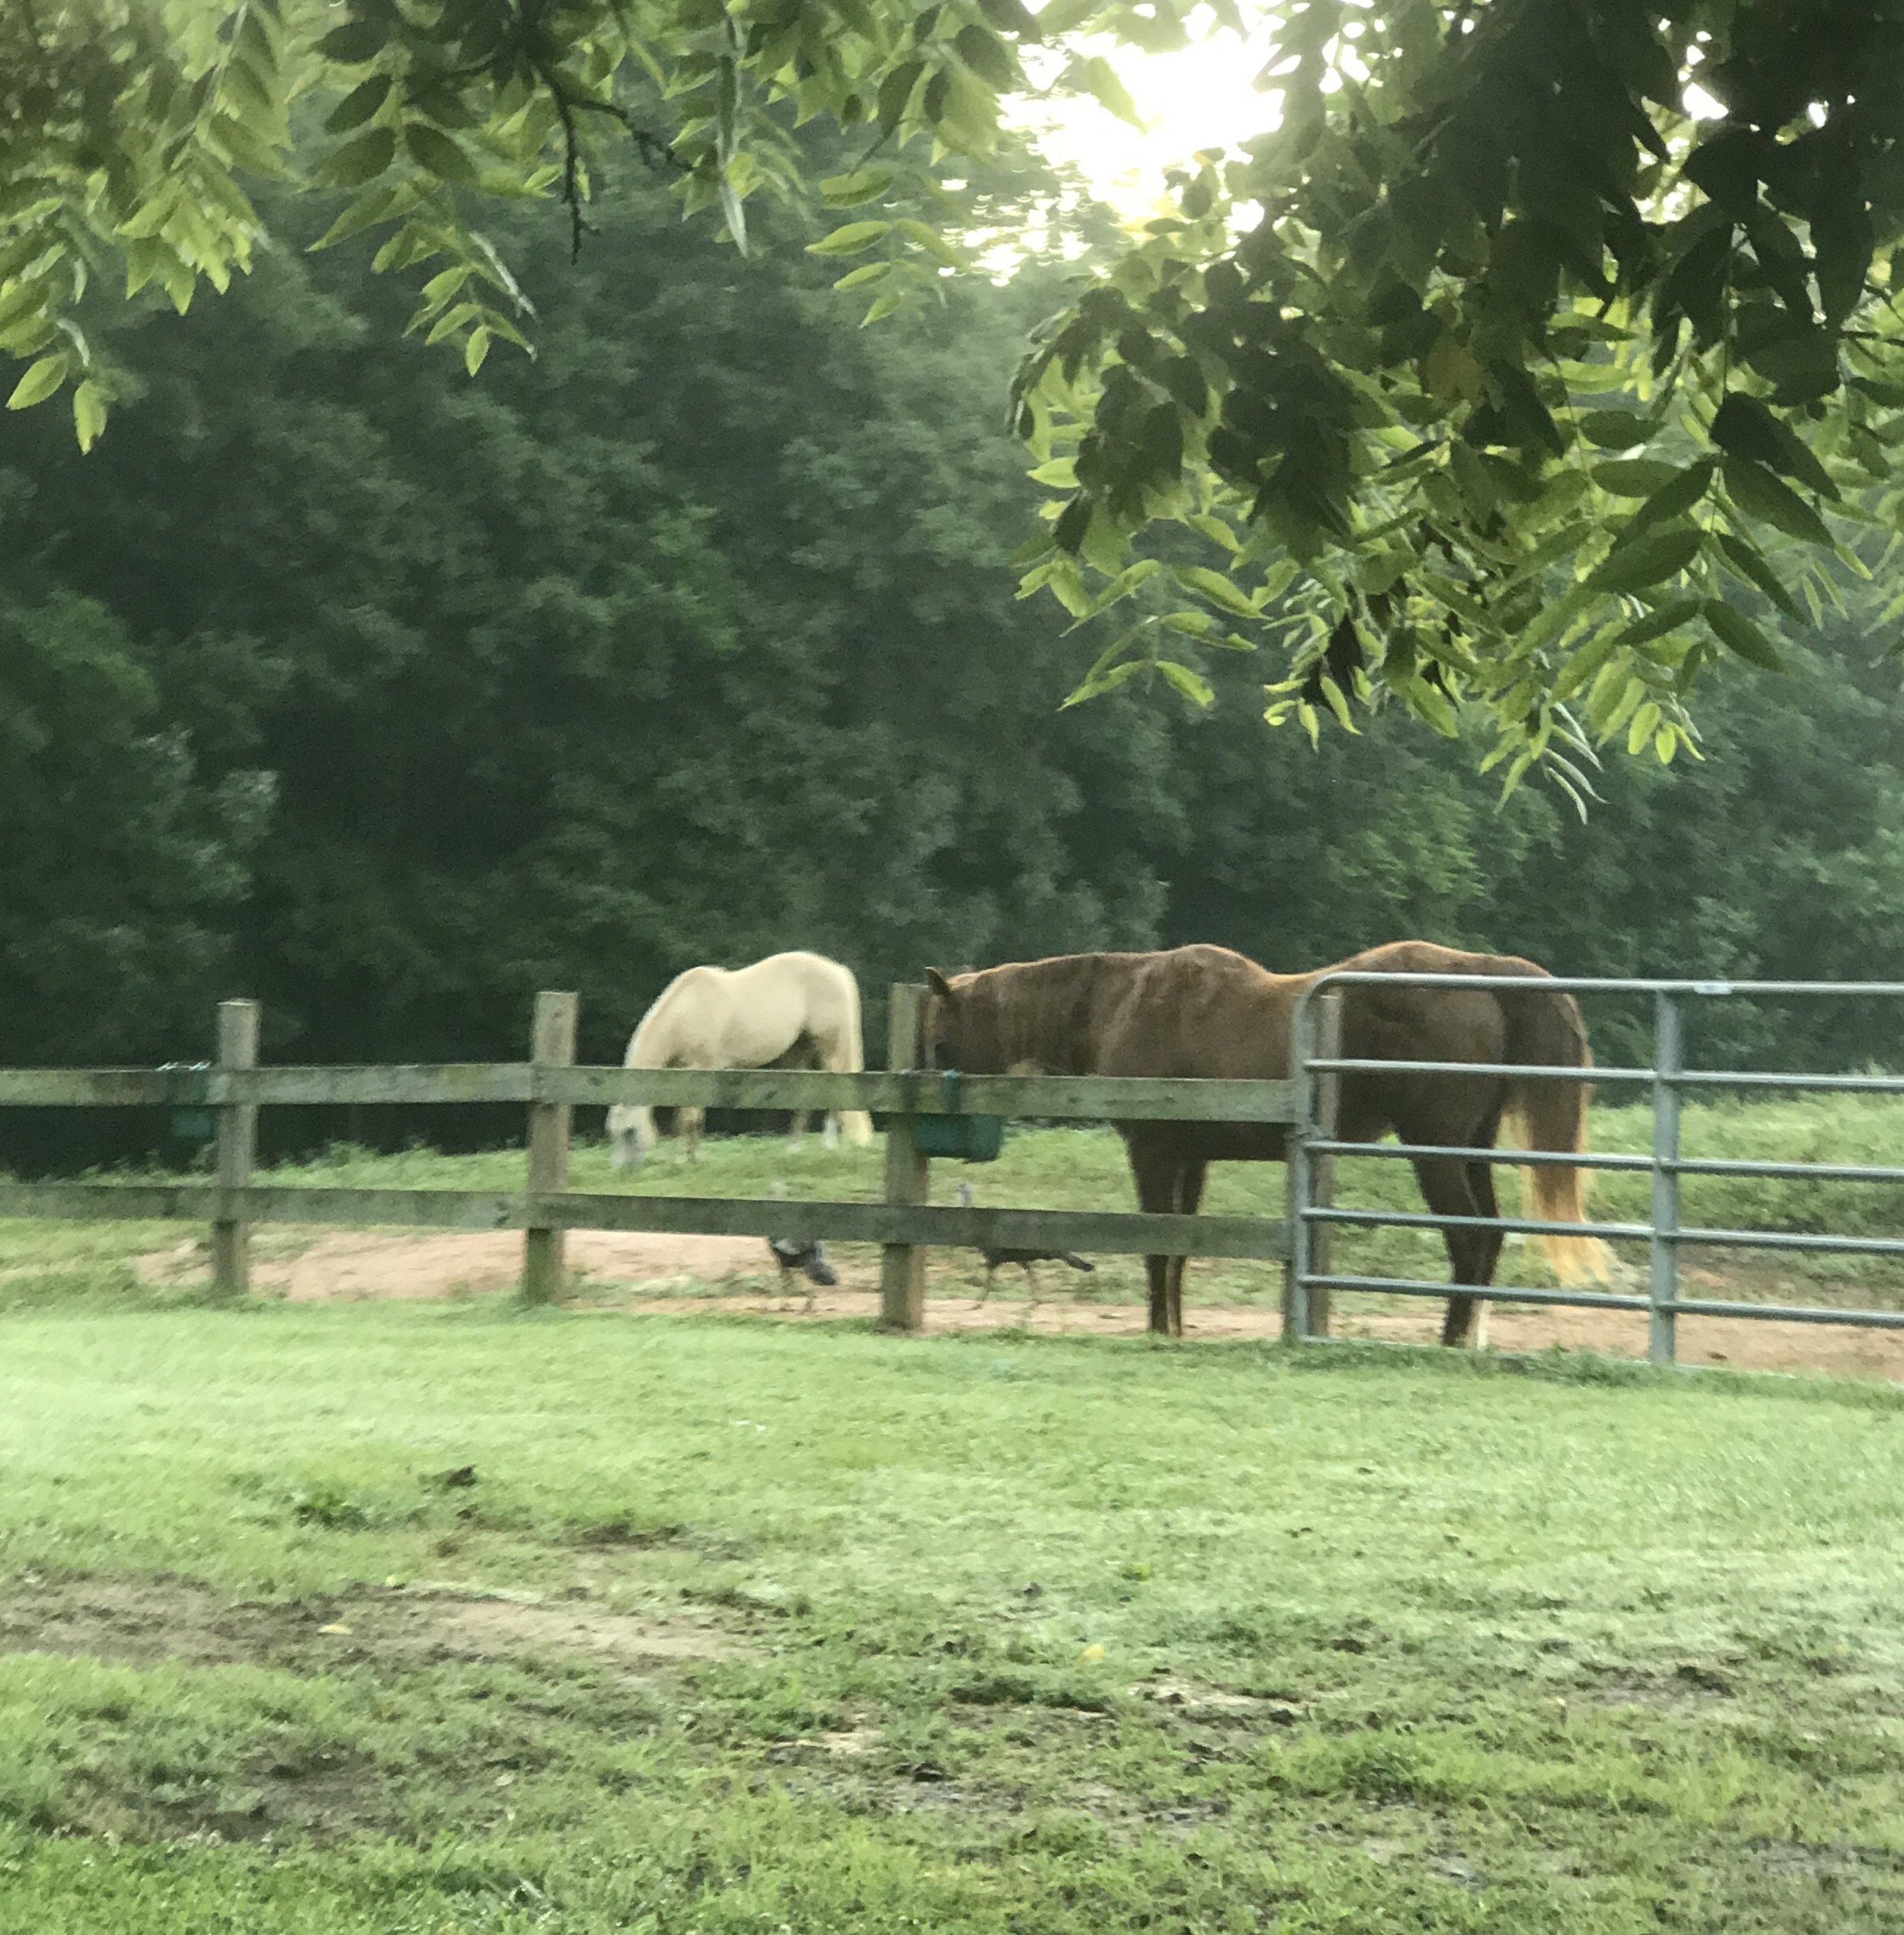 Happy farm horses